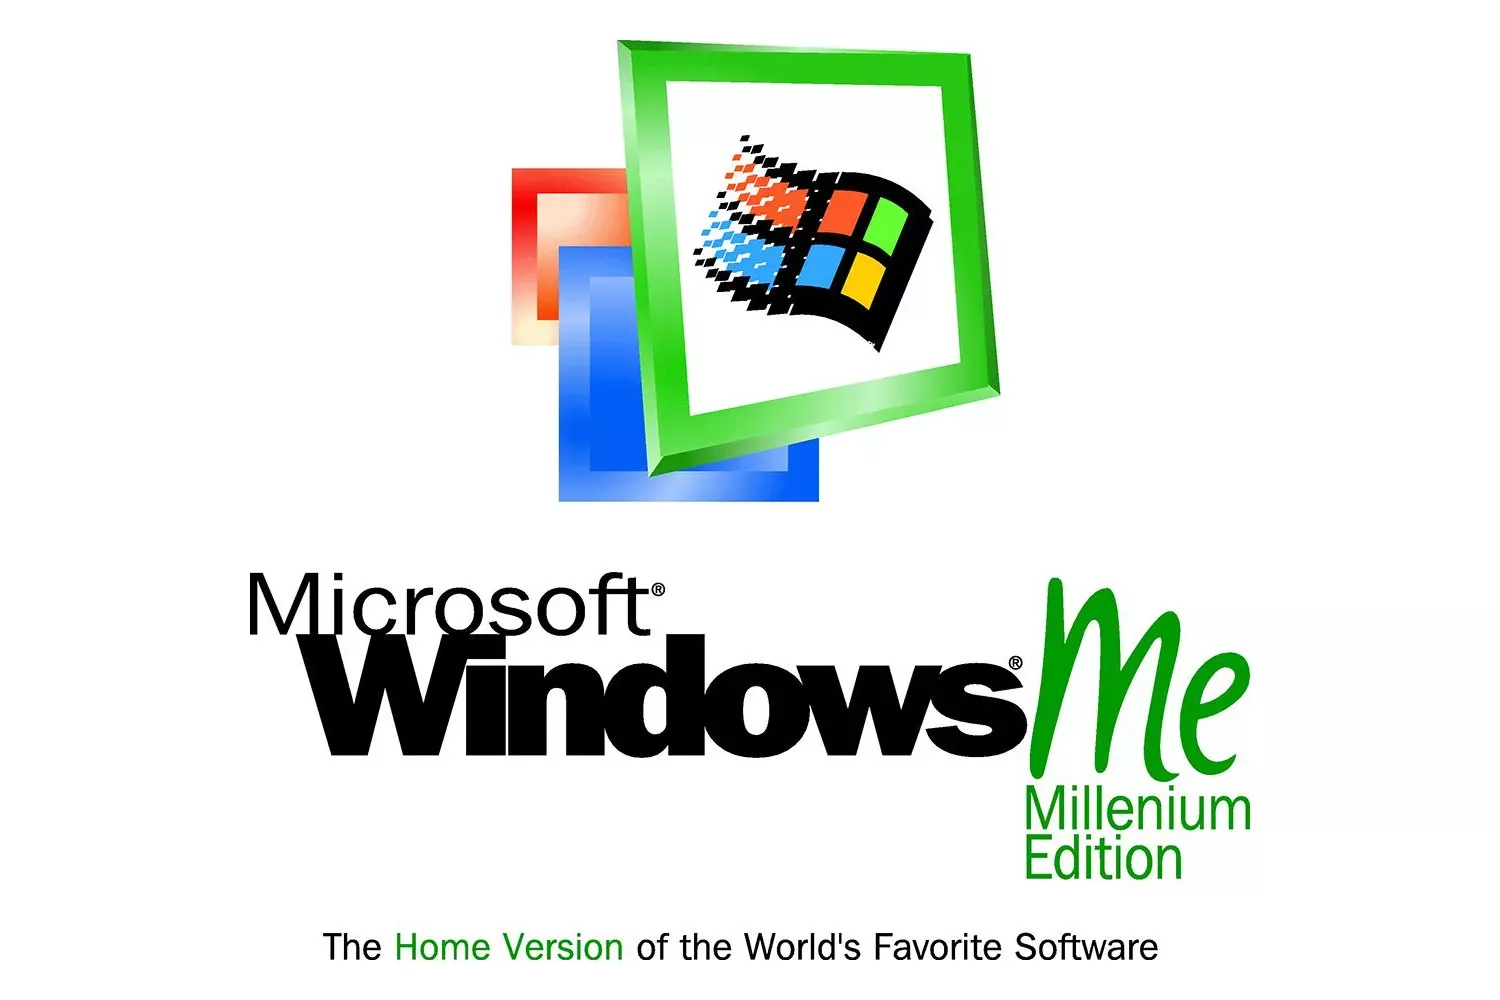 Microsoft Windows: краткая история 1985-2021 год